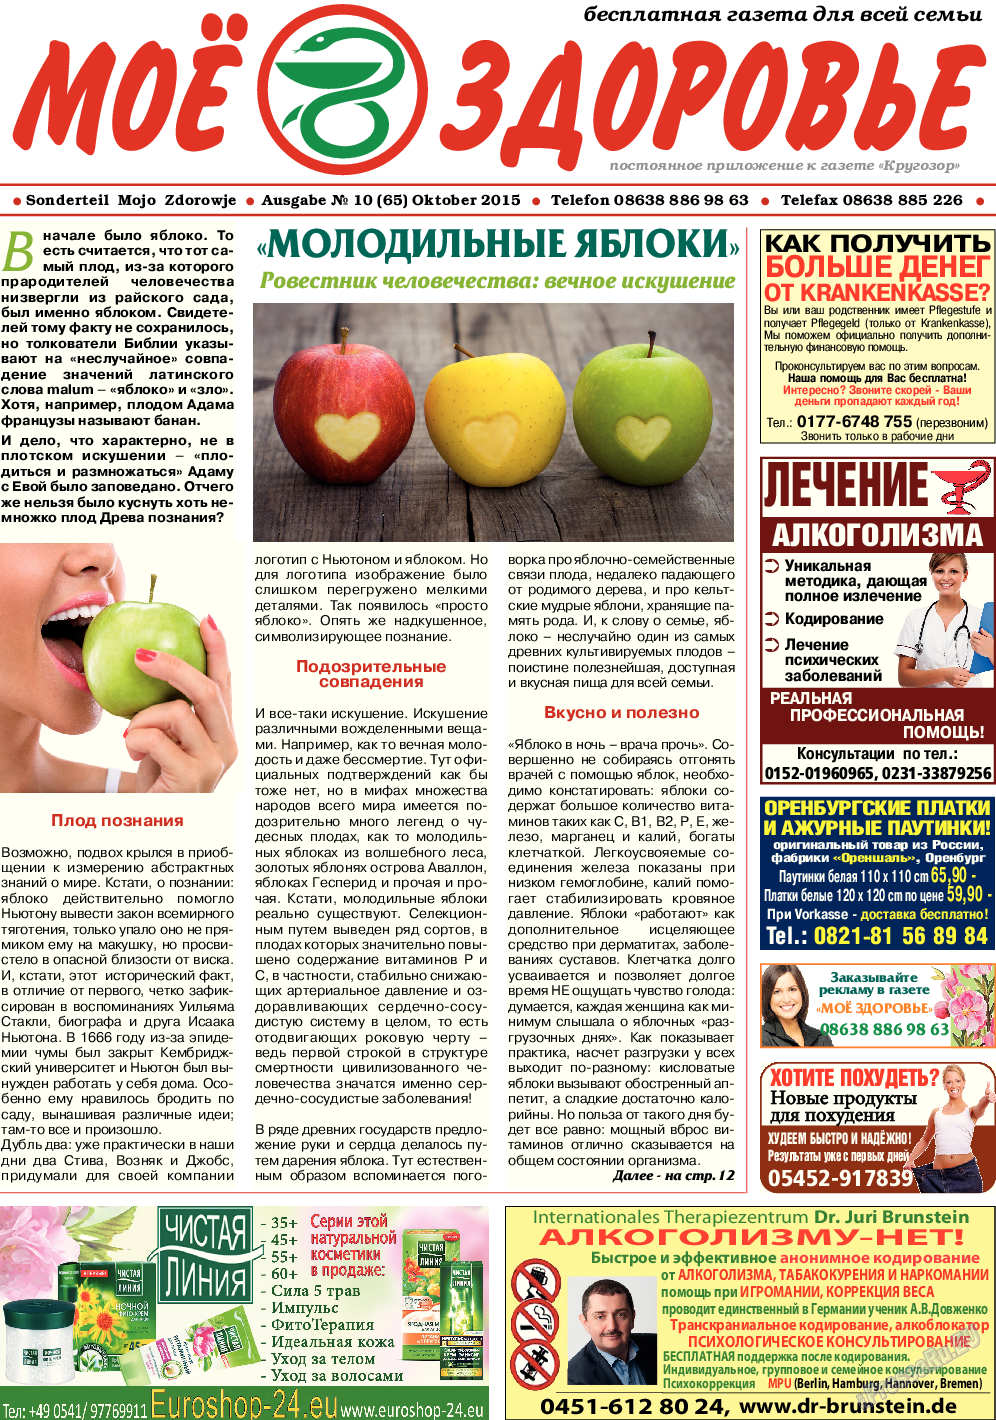 Кругозор (газета). 2015 год, номер 10, стр. 11